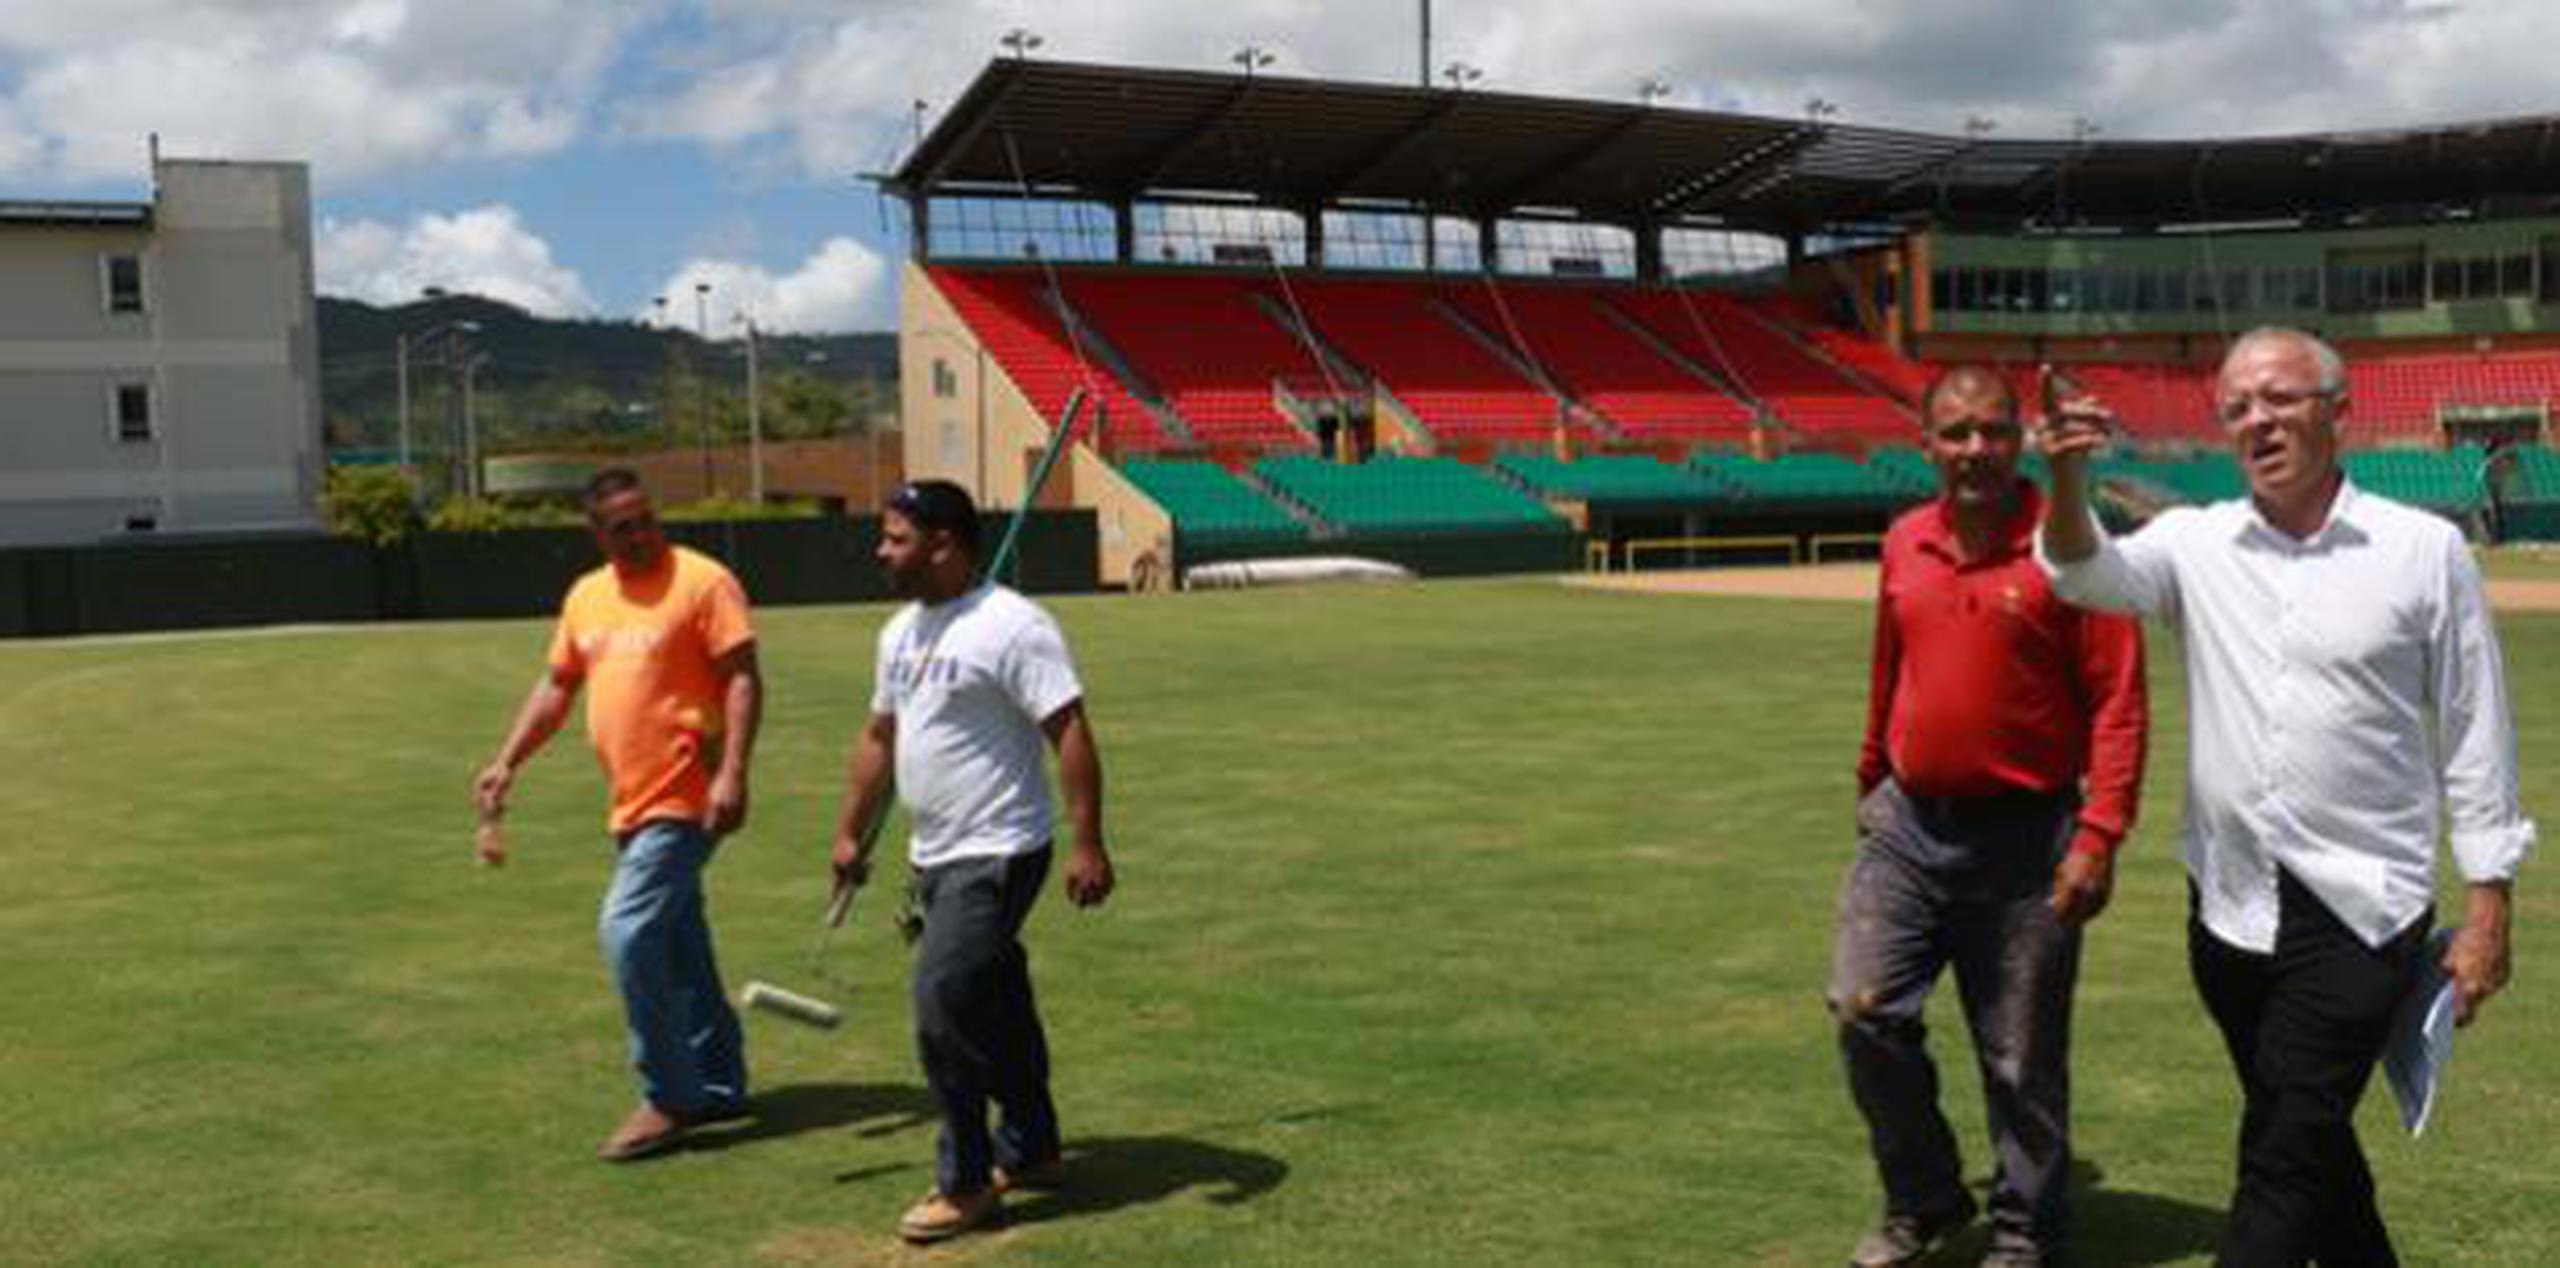 El estadio Pedro Montañez fue inaugurado por el Municipio de Cayey el 17 de febrero de 2012 a uno costo global de $20 millones, con capacidad para 6,000 espectadores y 1,500 estacionamientos en una estructura a nivel mundial y facilidades ventajosas para los Toritos. (Suministrada)